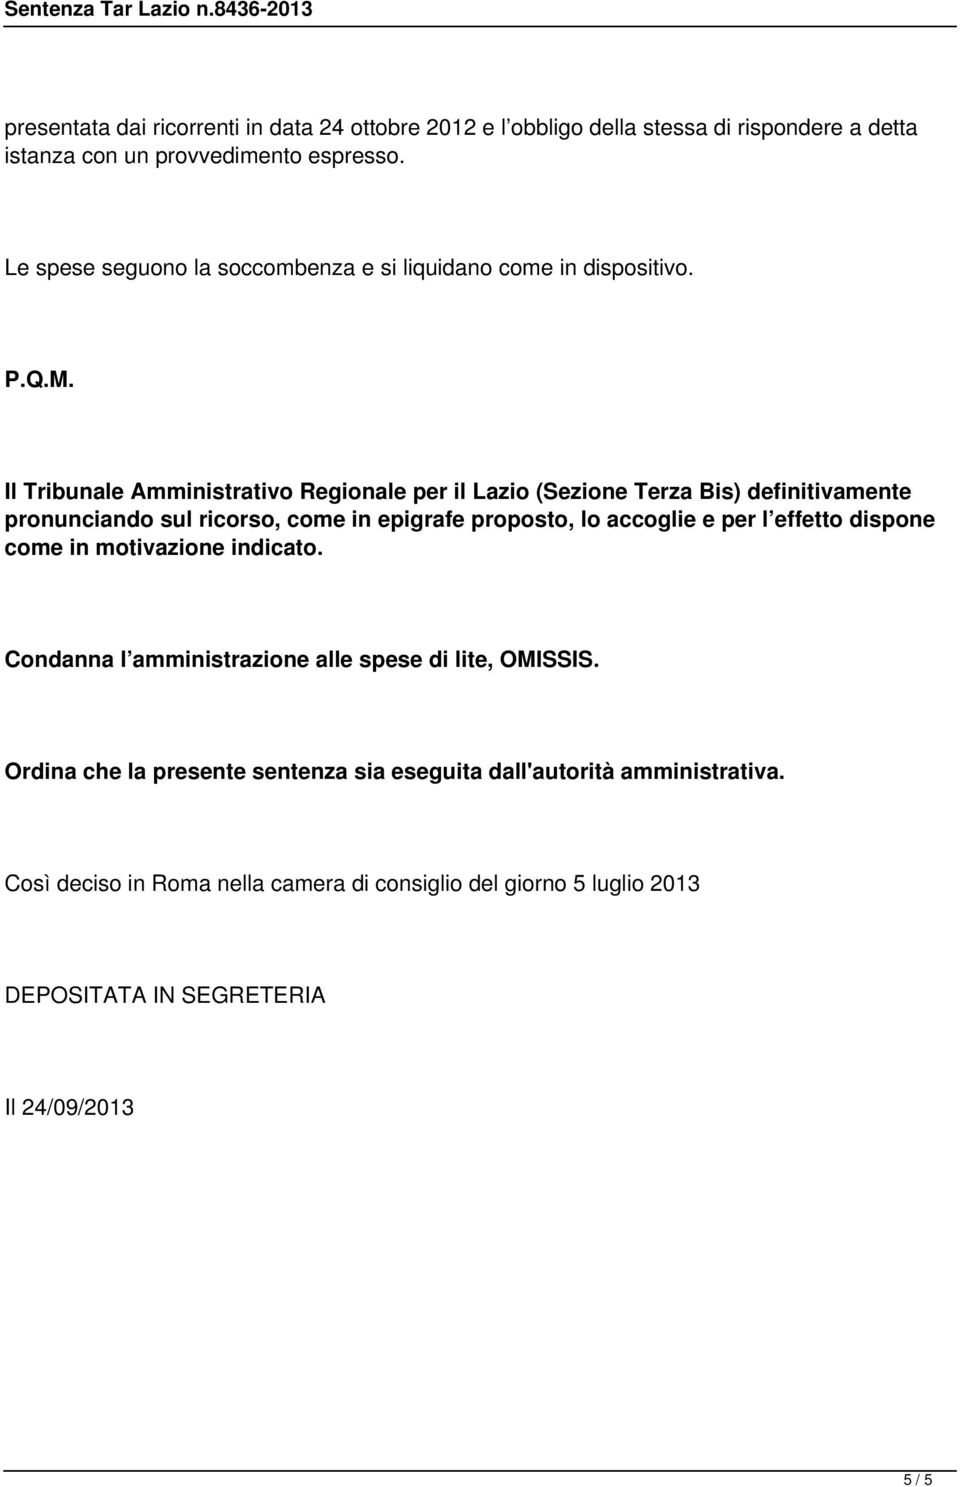 Il Tribunale Amministrativo Regionale per il Lazio (Sezione Terza Bis) definitivamente pronunciando sul ricorso, come in epigrafe proposto, lo accoglie e per l